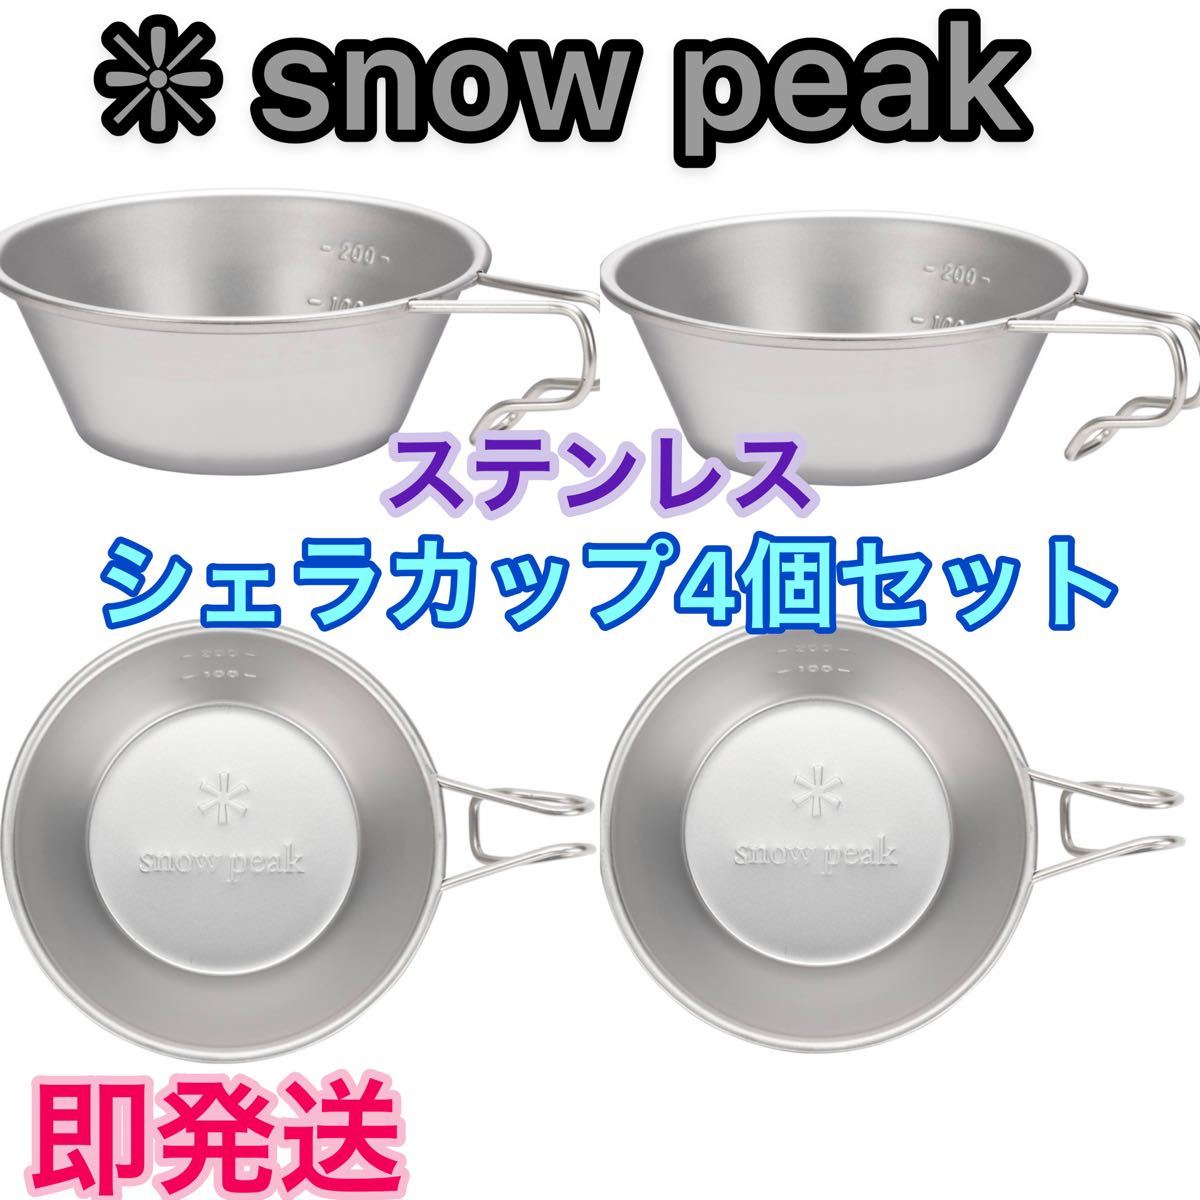 【新品未使用】snow peakスノーピーク シェラカップ 4個セット ★ステンレスE-103★310ml  食器セット